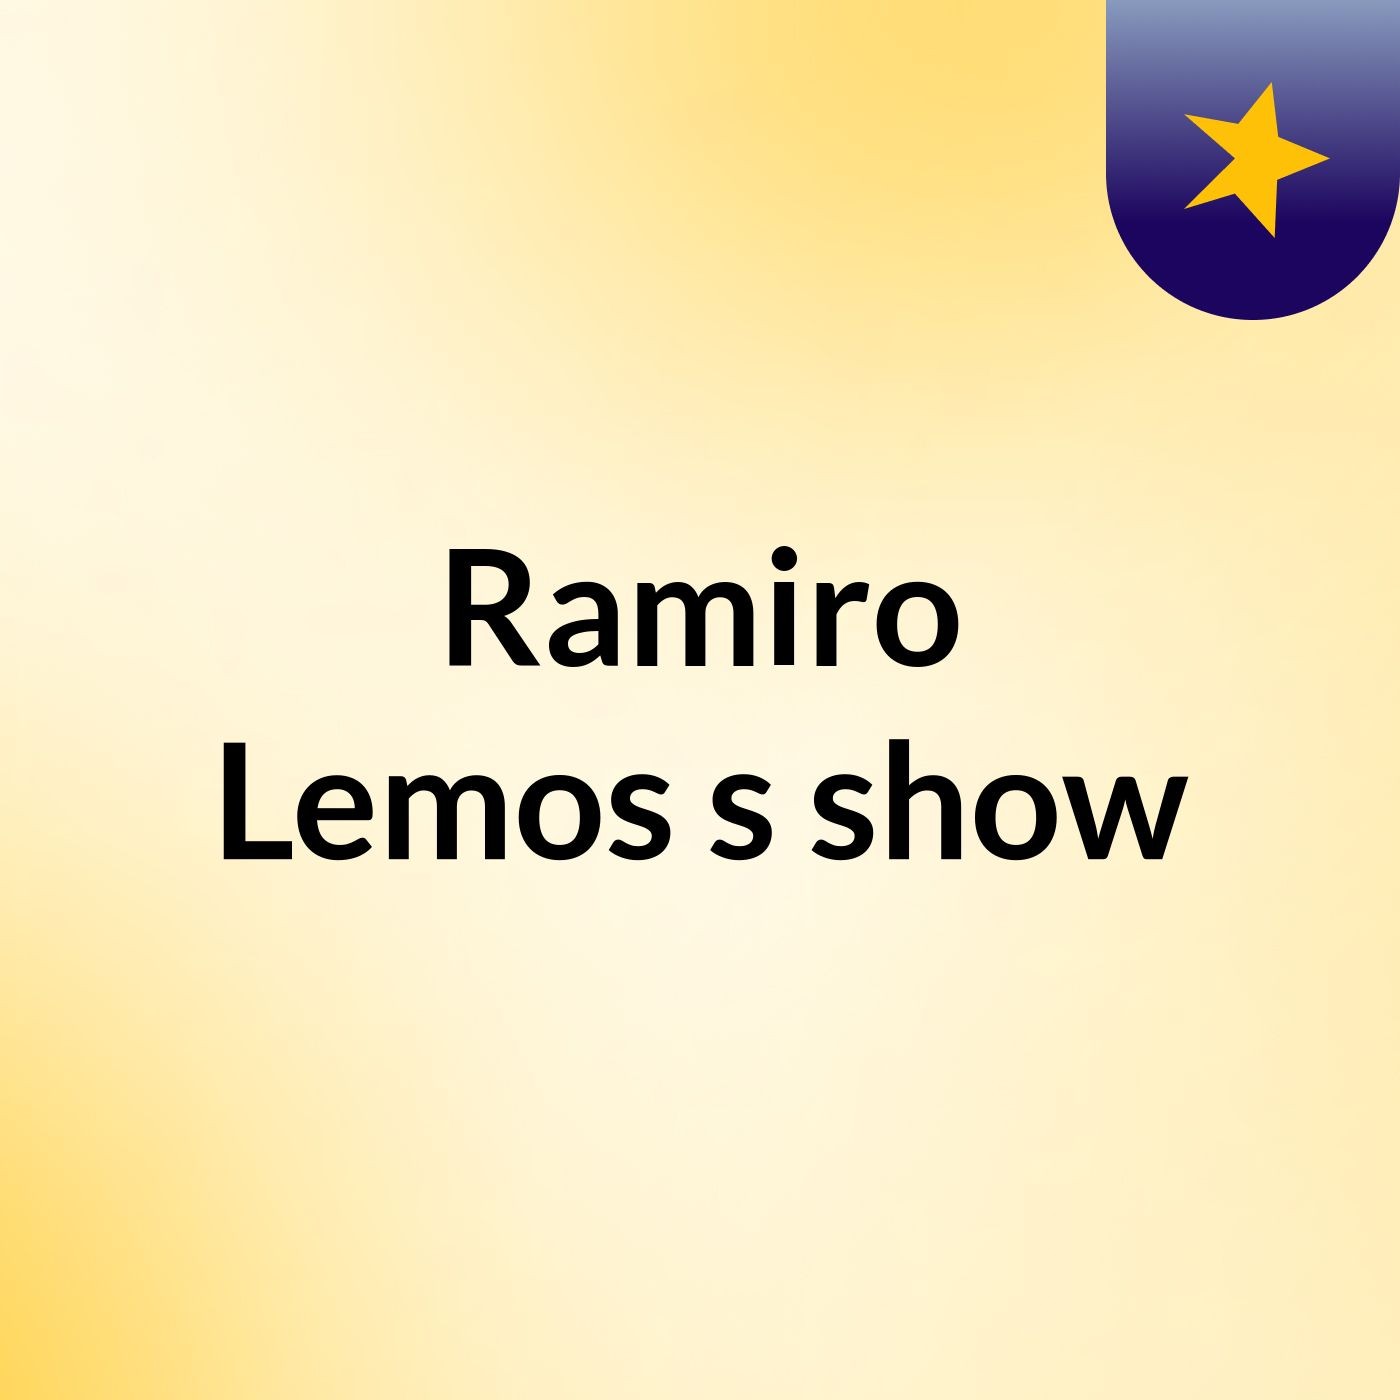 Ramiro Lemos's show